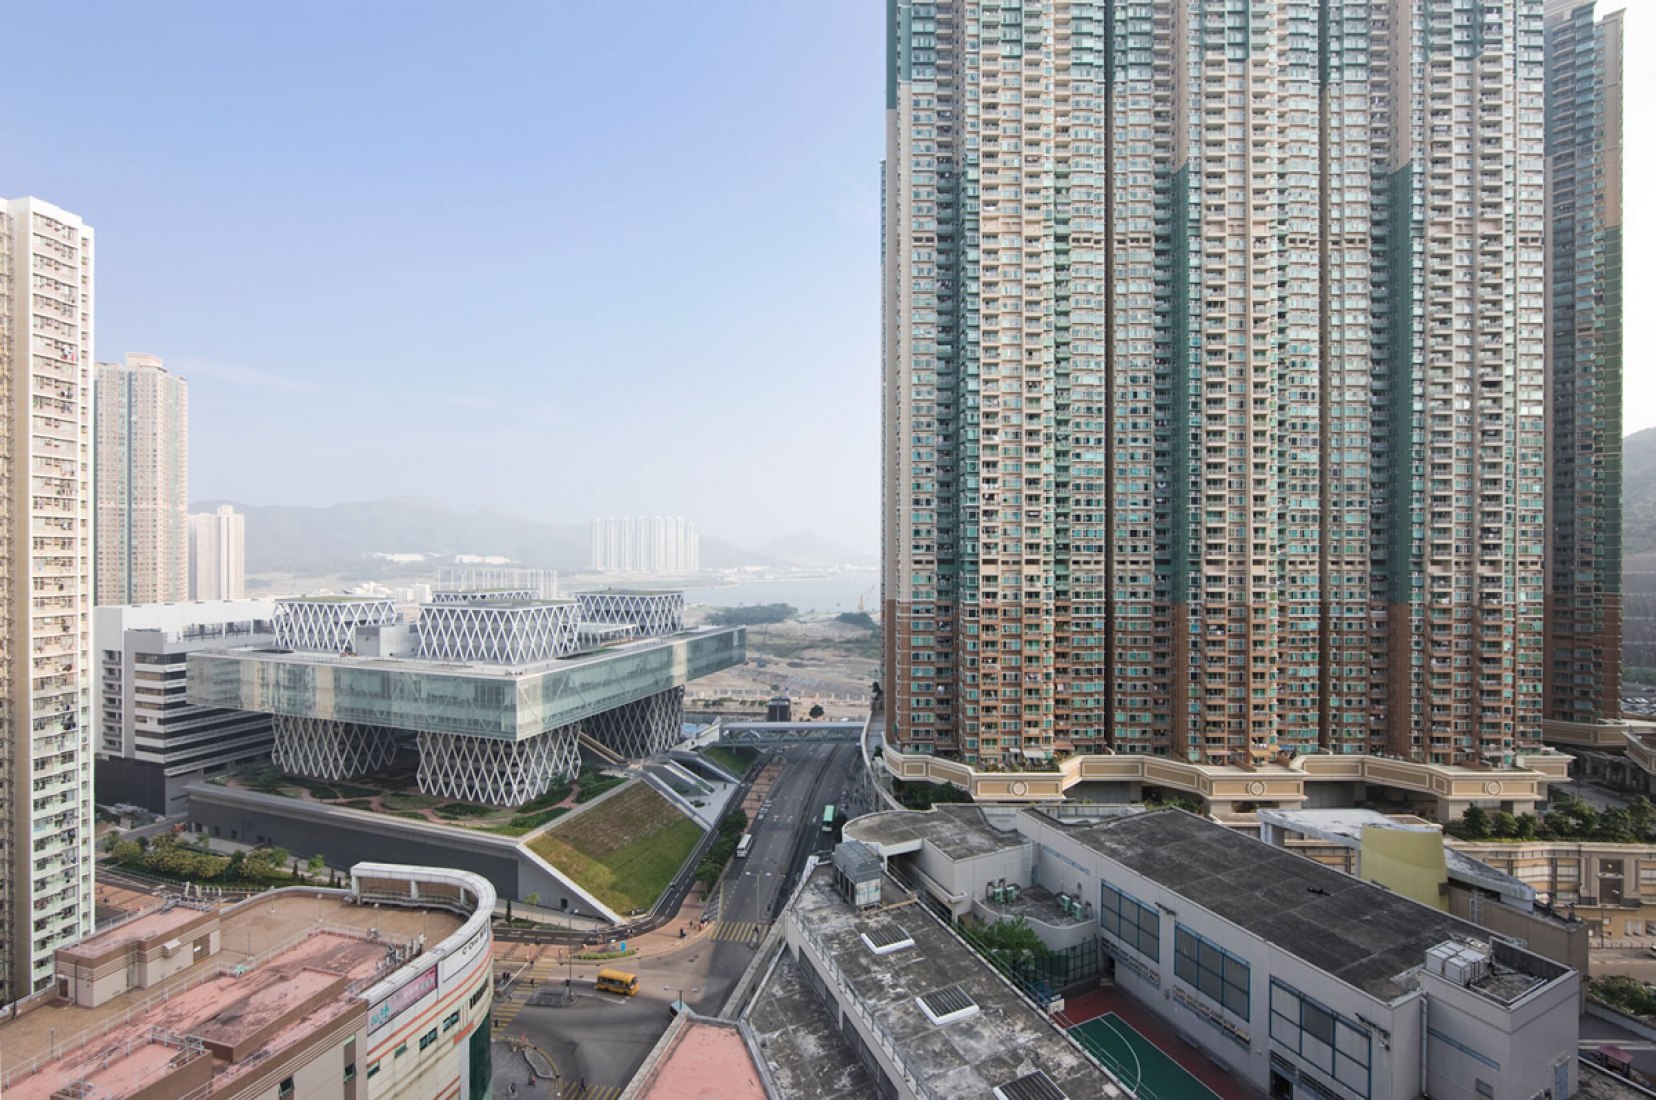 Vista de pajaro. Hong Kong Design Institute por CAAU. Fotografia © Sergio Pirrone.